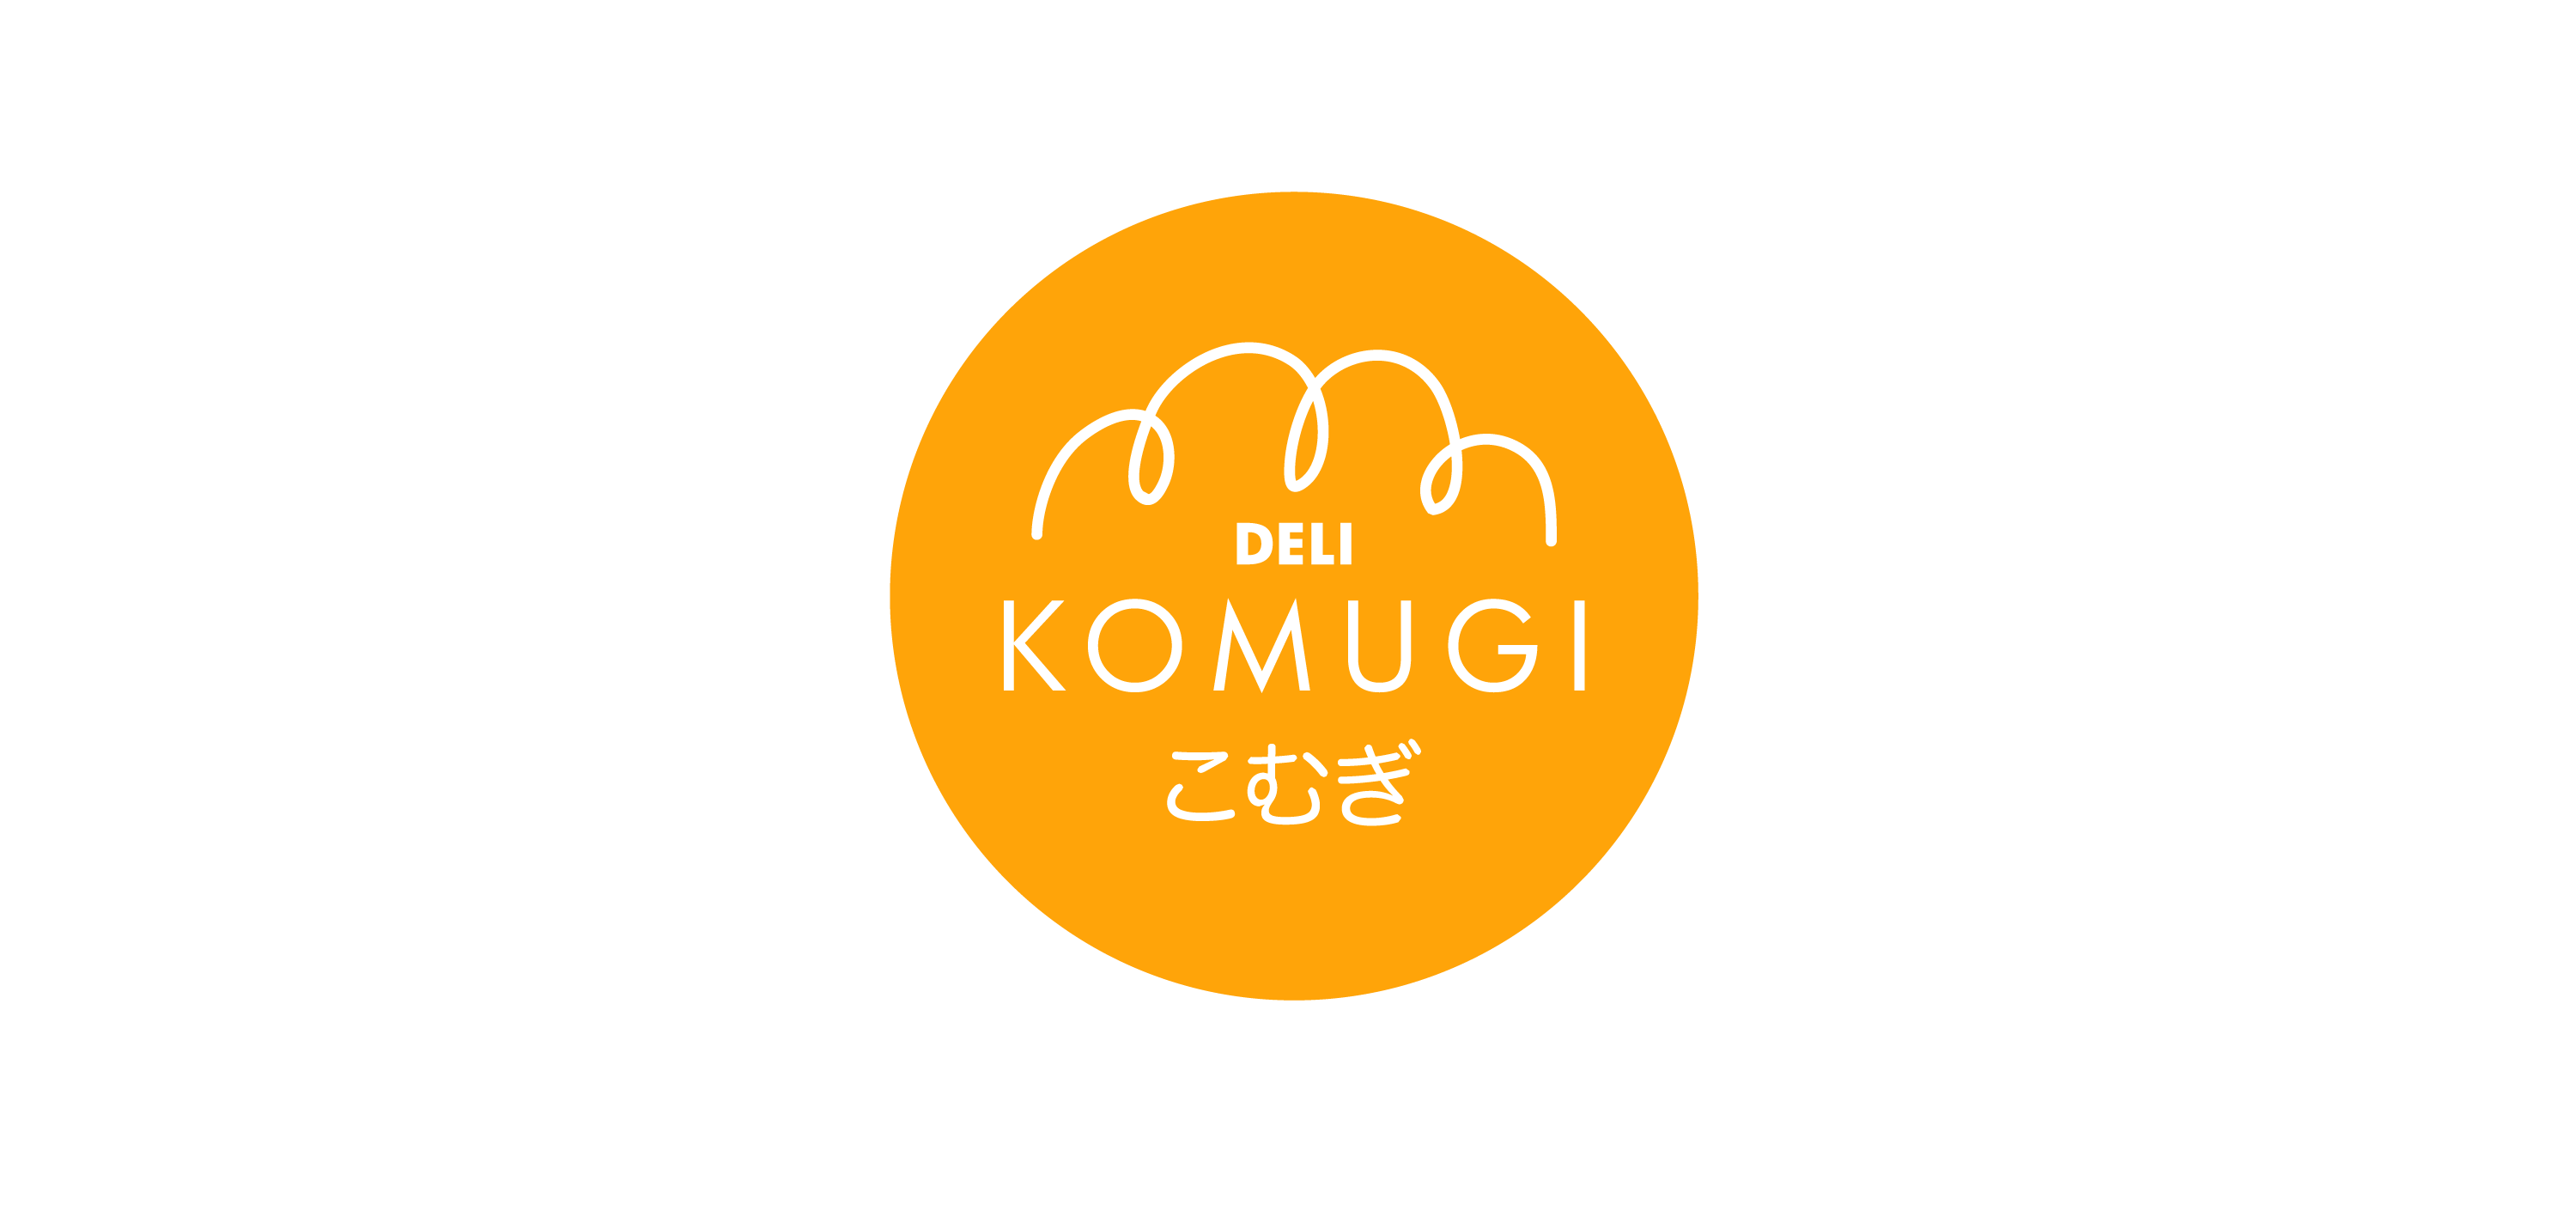 komugi logo vector